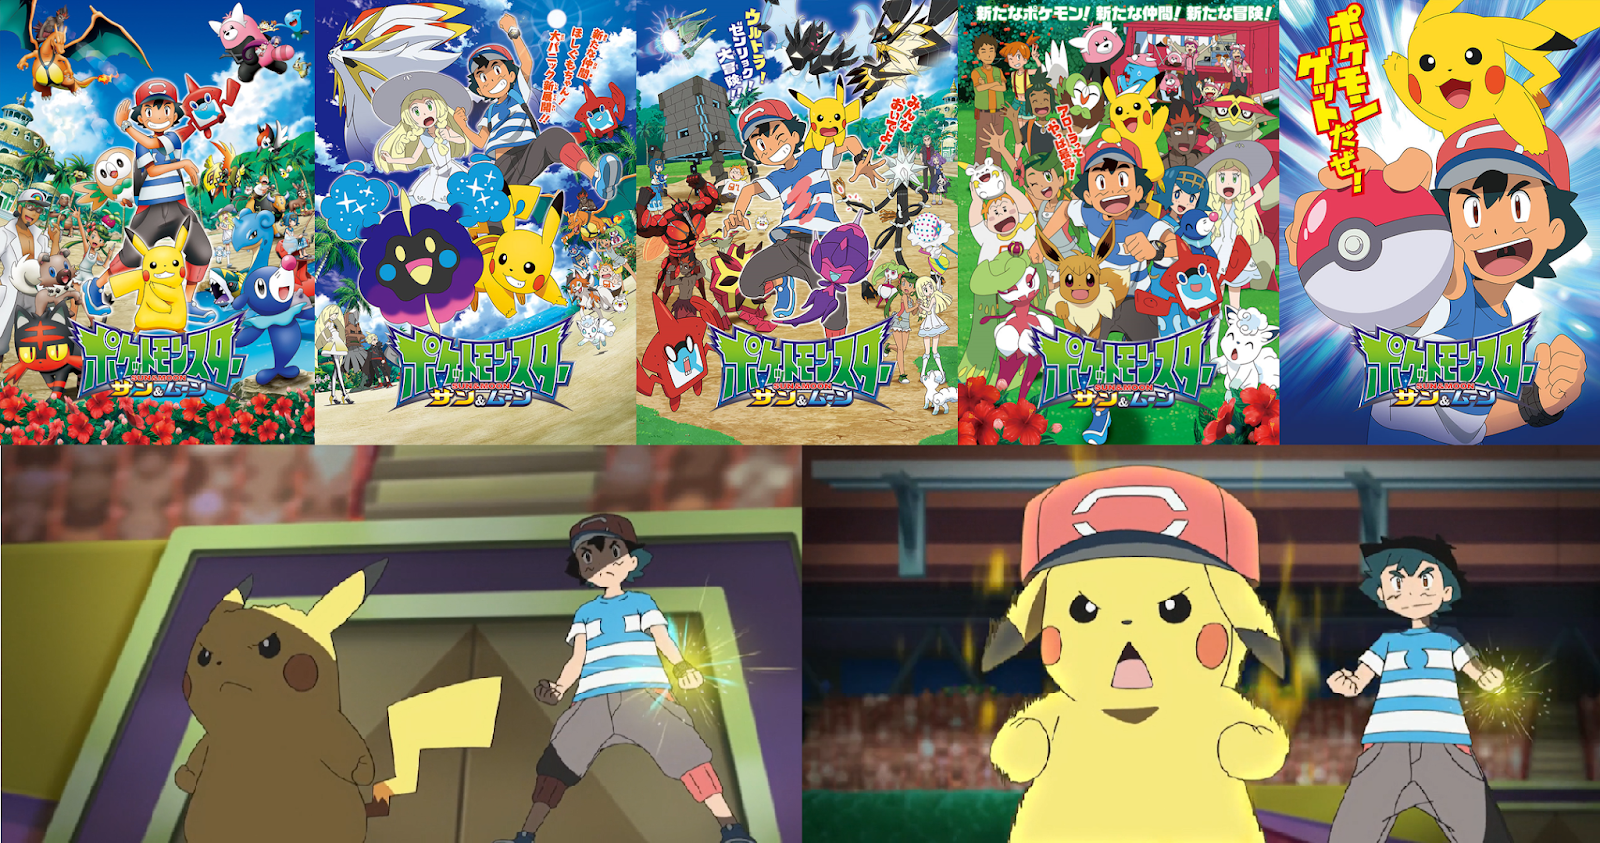 Pokémon GO: Temporada de Alola é anunciada com lendário da região, pokémon